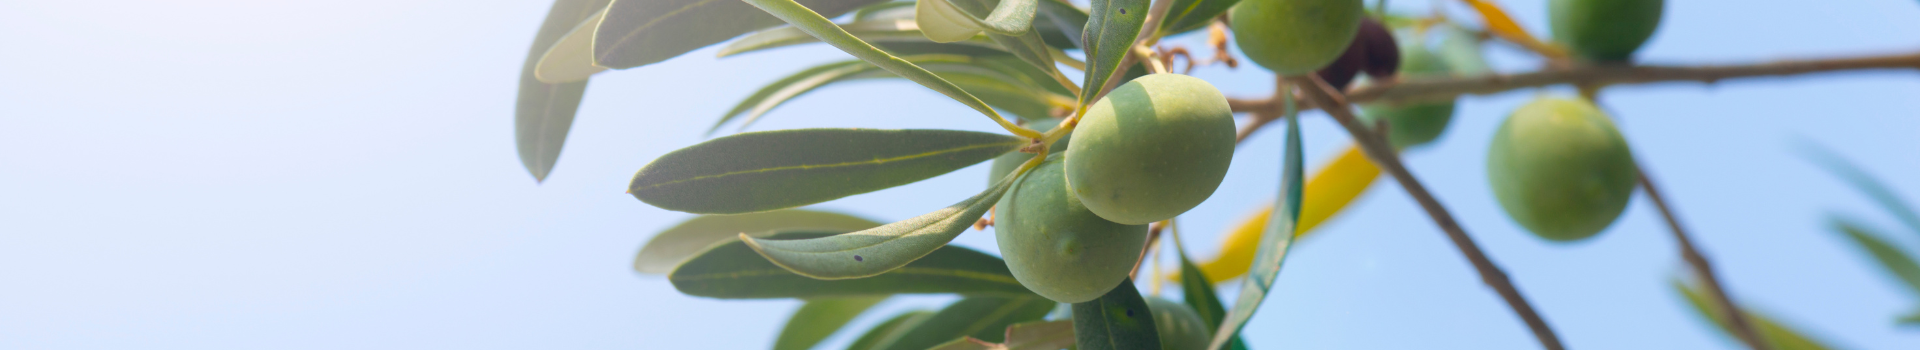 Modèles de maladies - olives